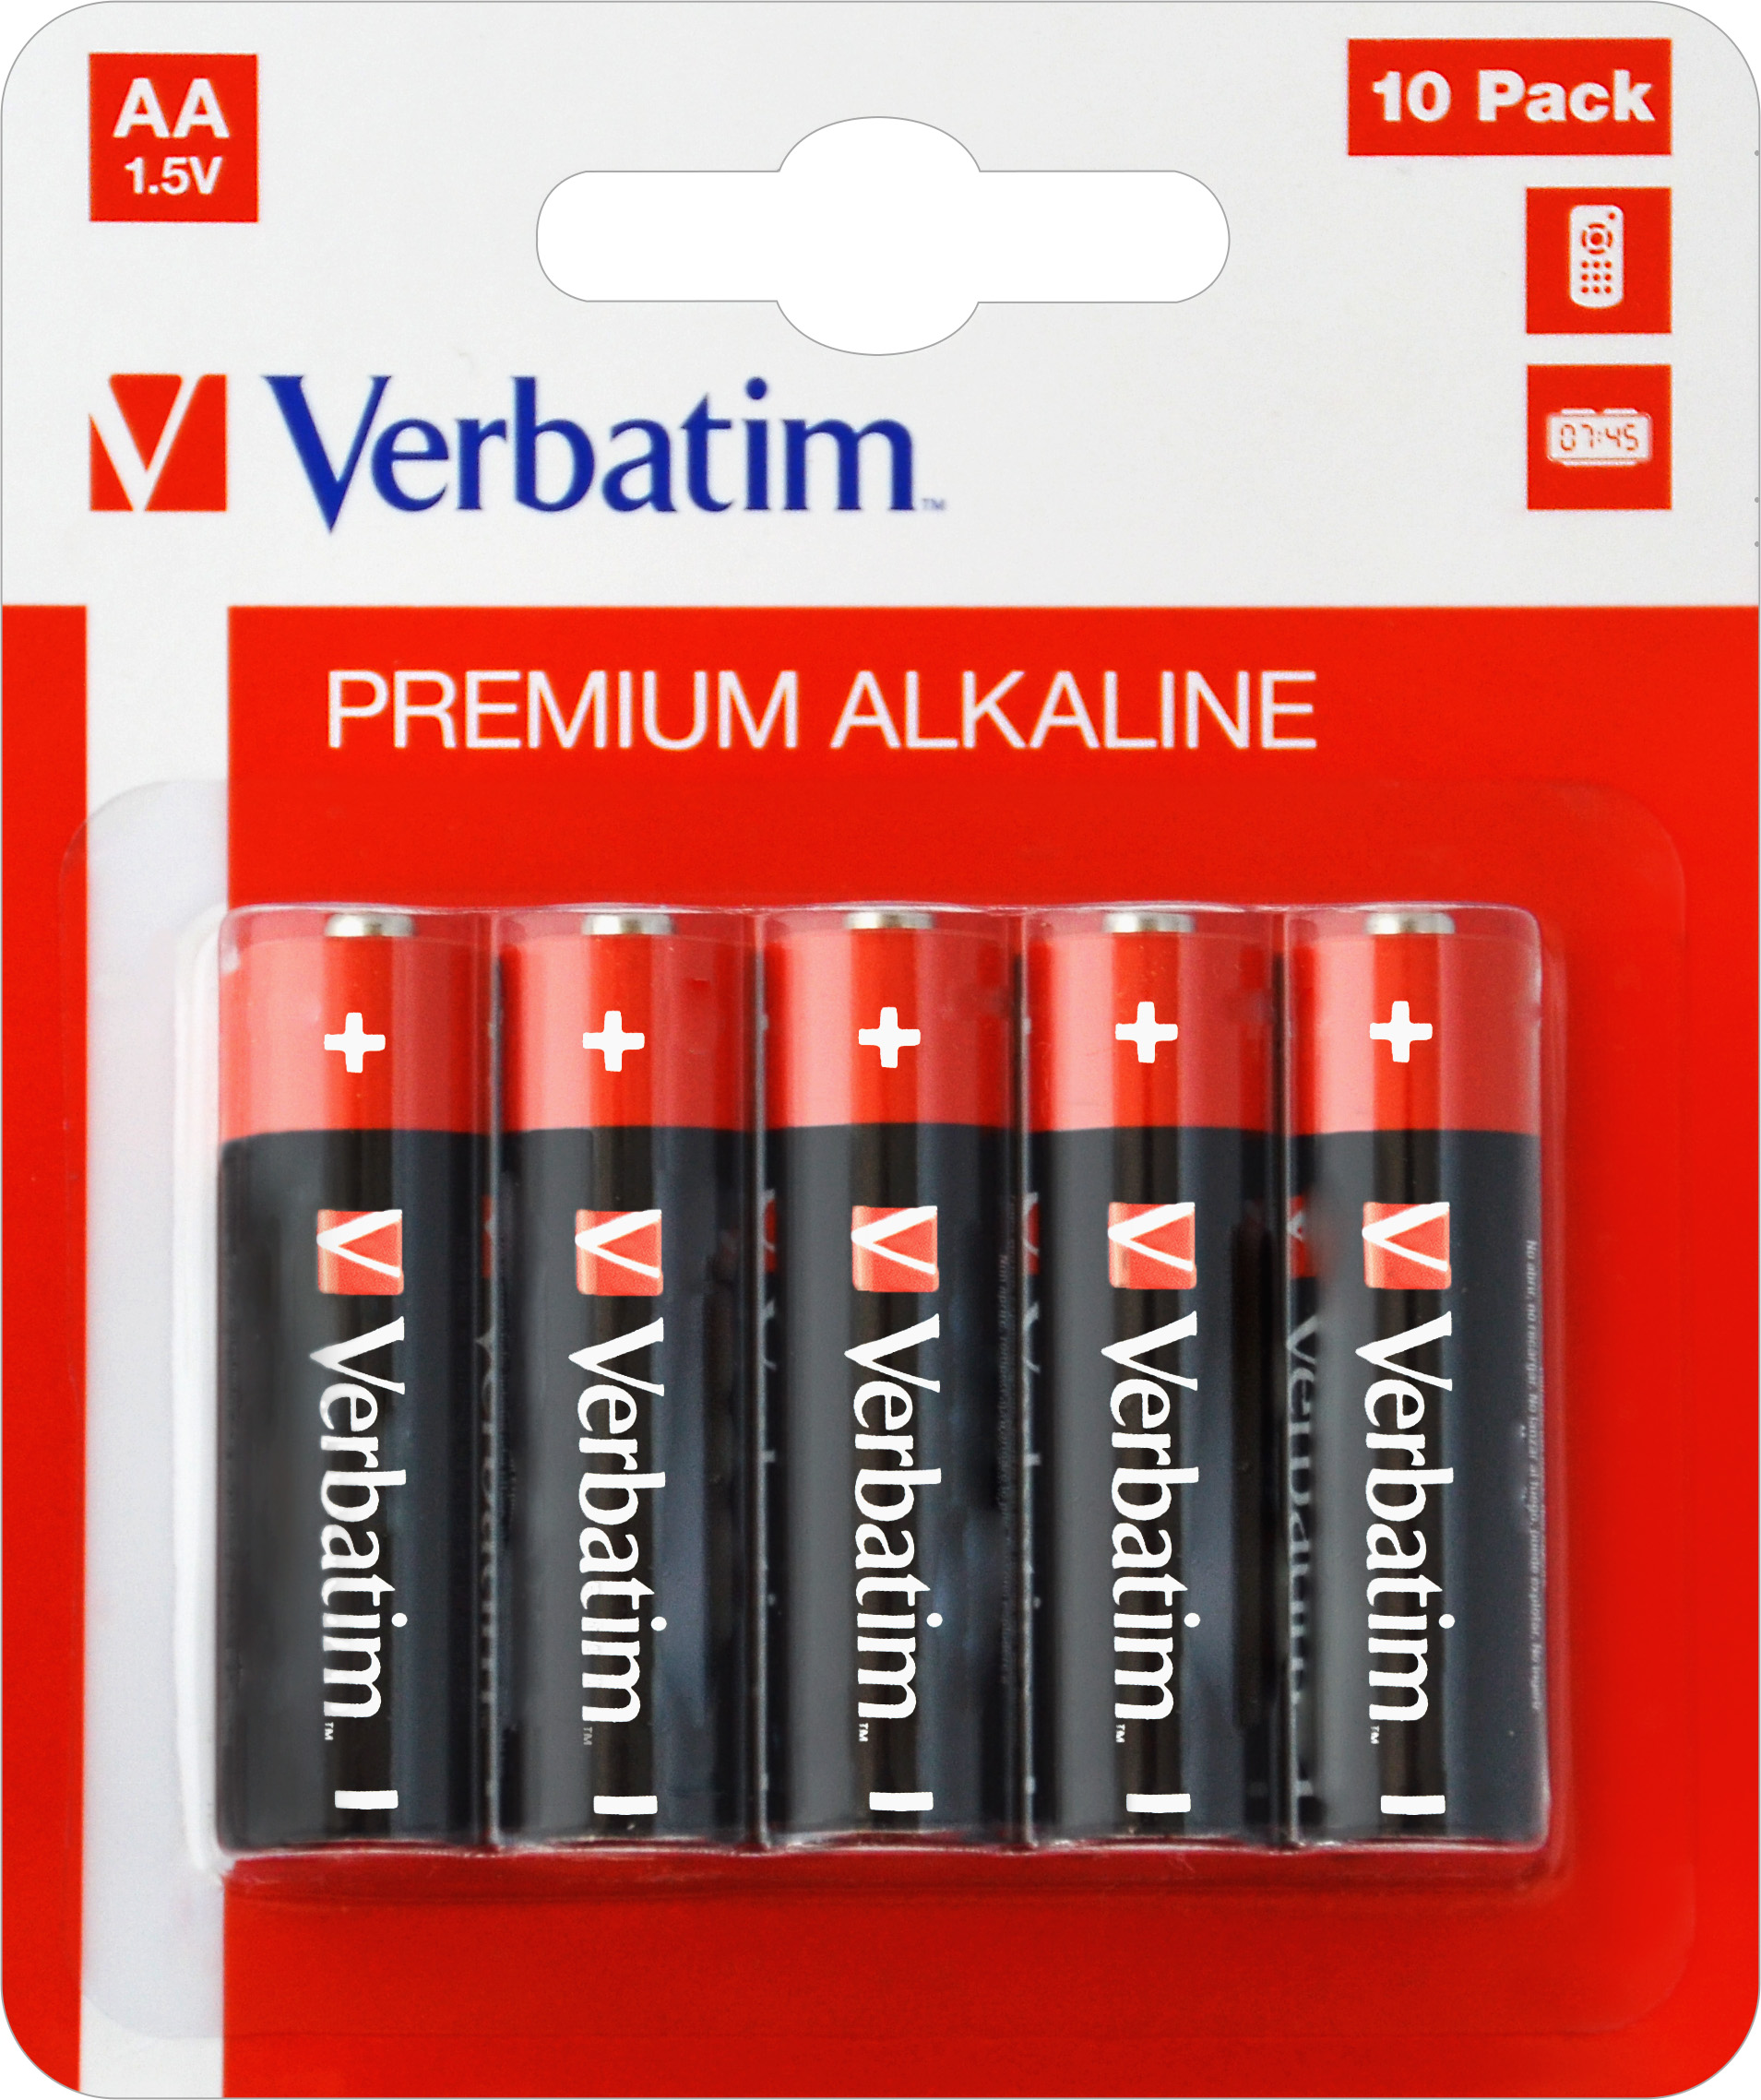 Verbatim Batterie Alkaline, Mignon, AA, LR06, 1.5V Premium, Retail Blister (10-Pack)